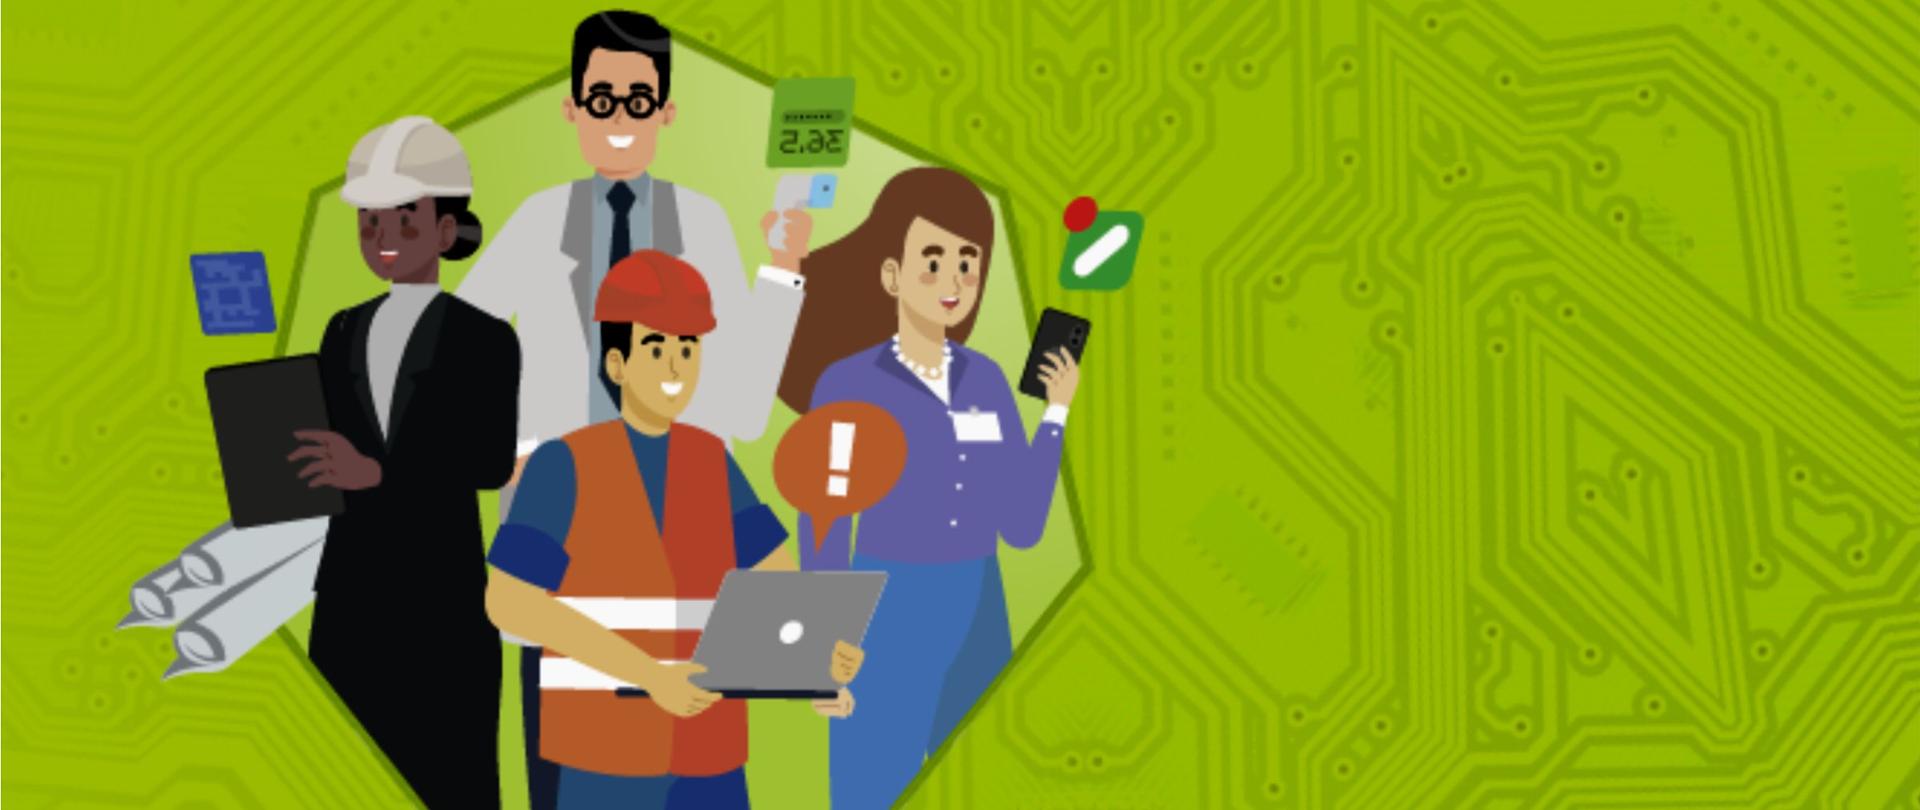 animacyjna ilustracja na zielonym tle płyty elektronicznej z dwoma postaciami kobiet i dwoma postaciami mężczyzn reprezentujące pracowników różnych branż